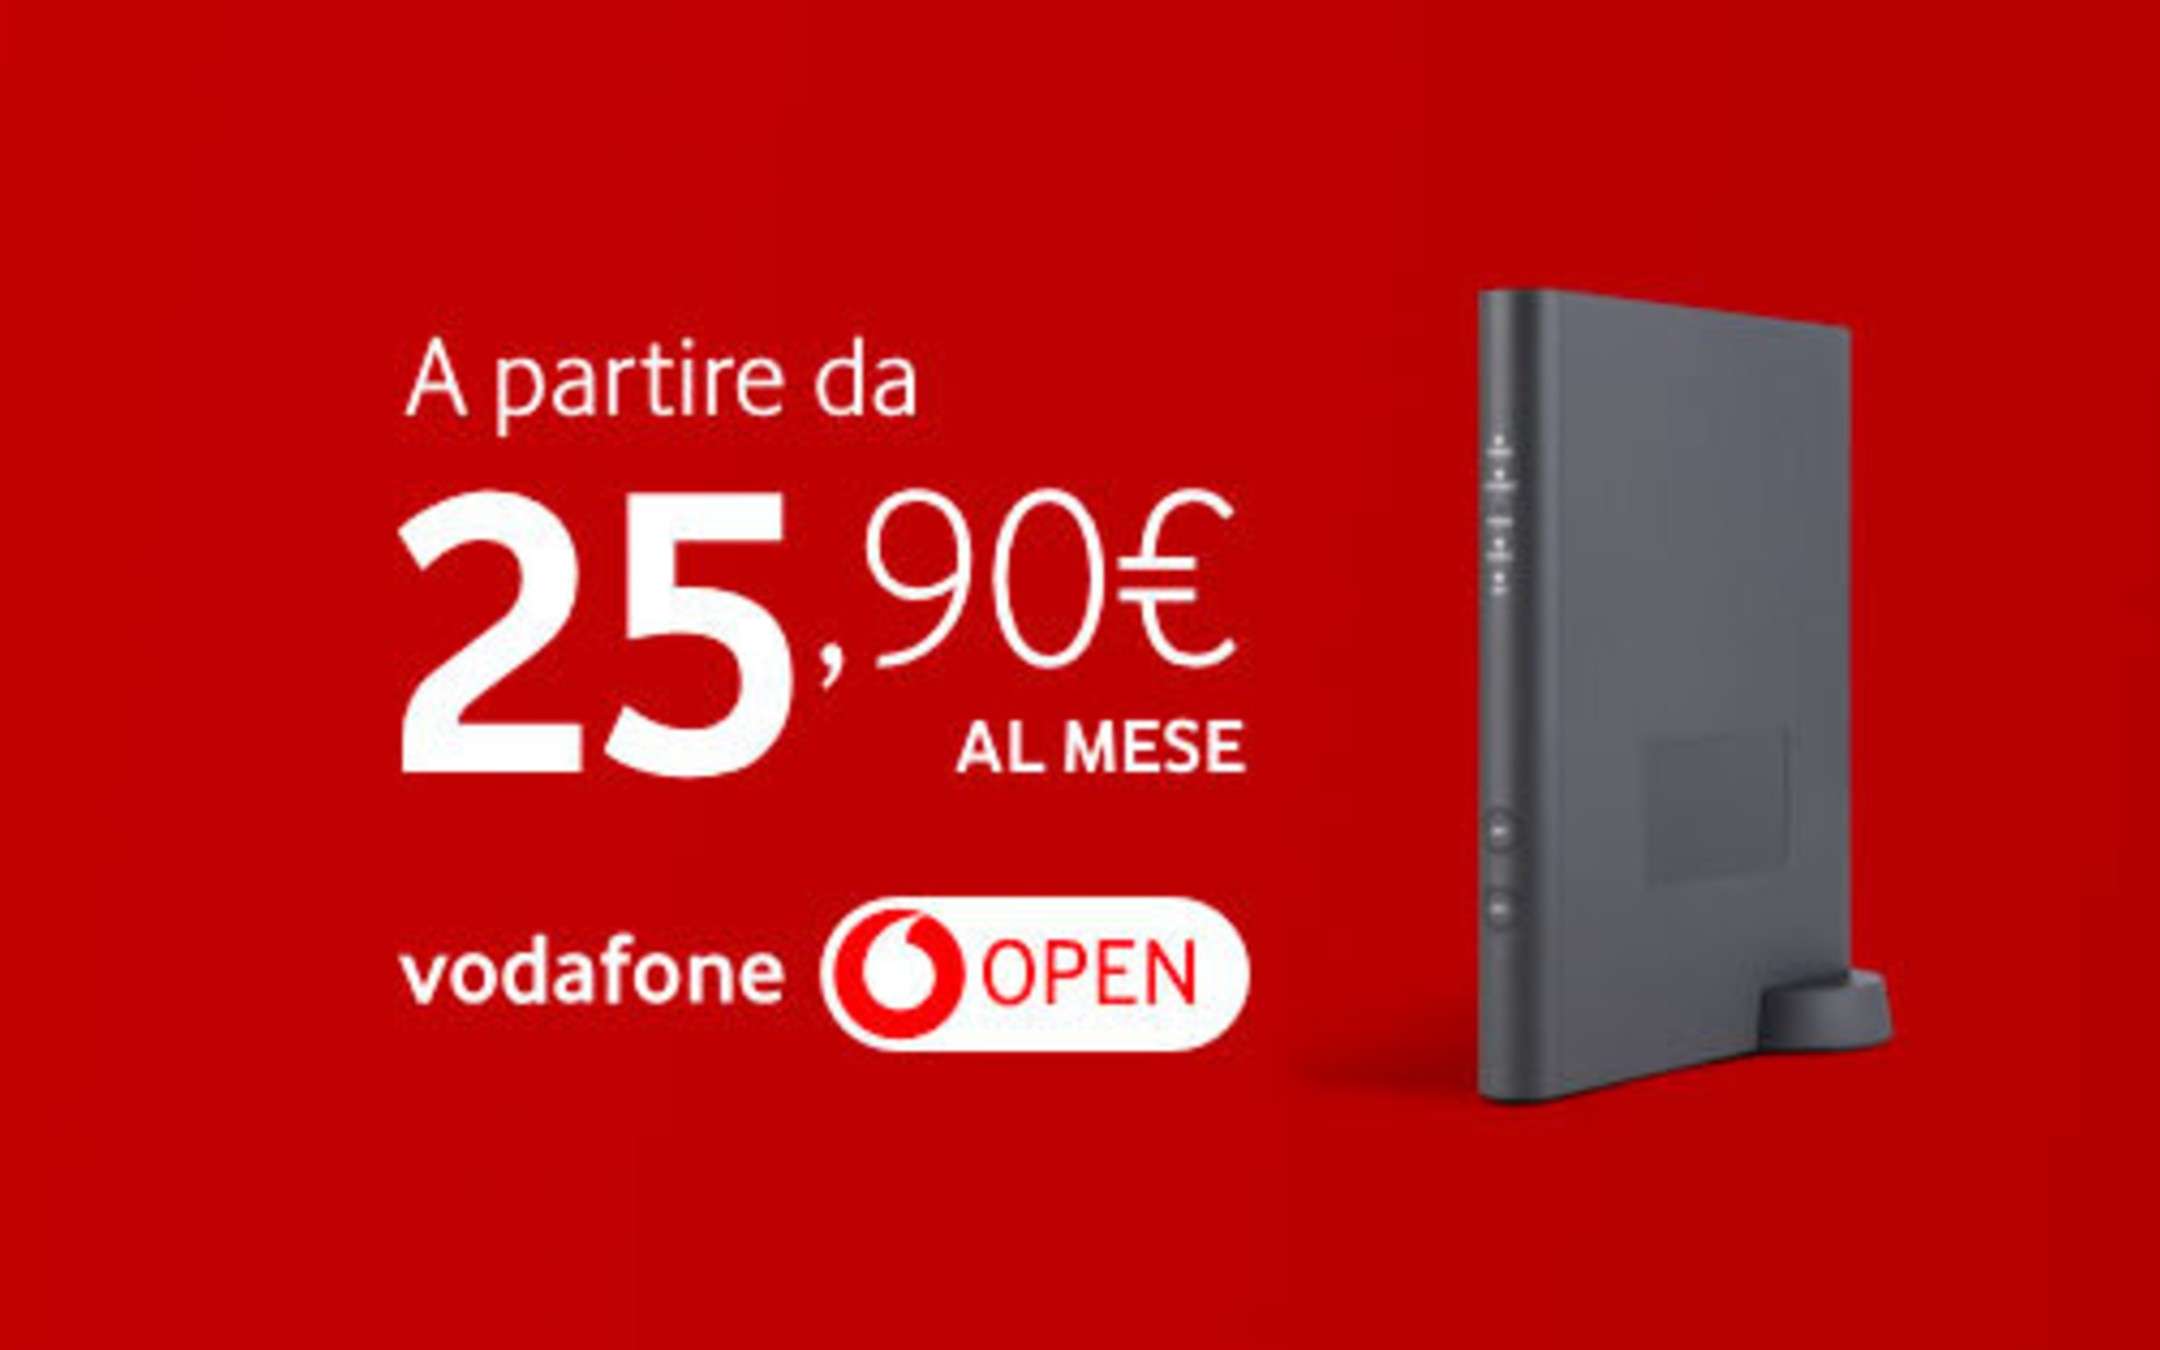 Internet Unlimited Vodafone: continua a 25,90€